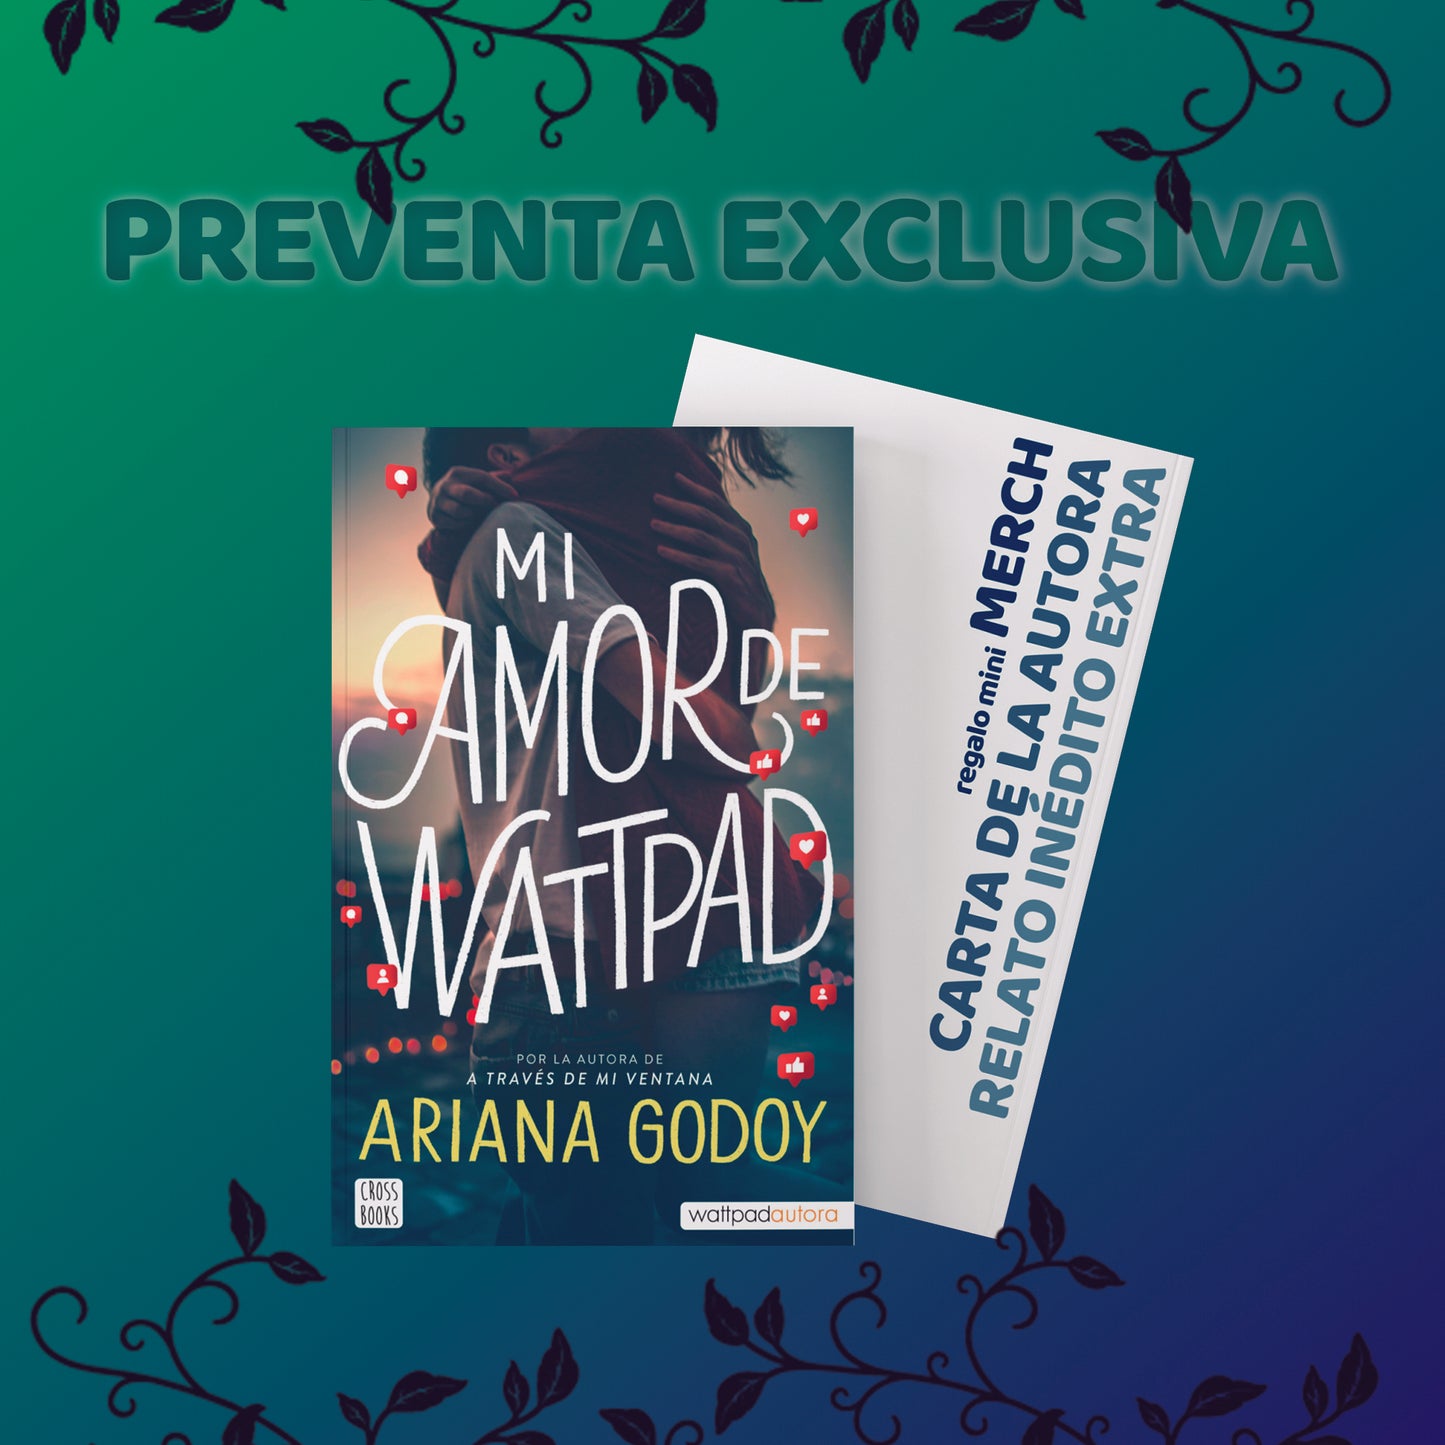 MI AMOR DE WATTPAD - Ariana Godoy (CONTENIDO EXCLUSIVO)